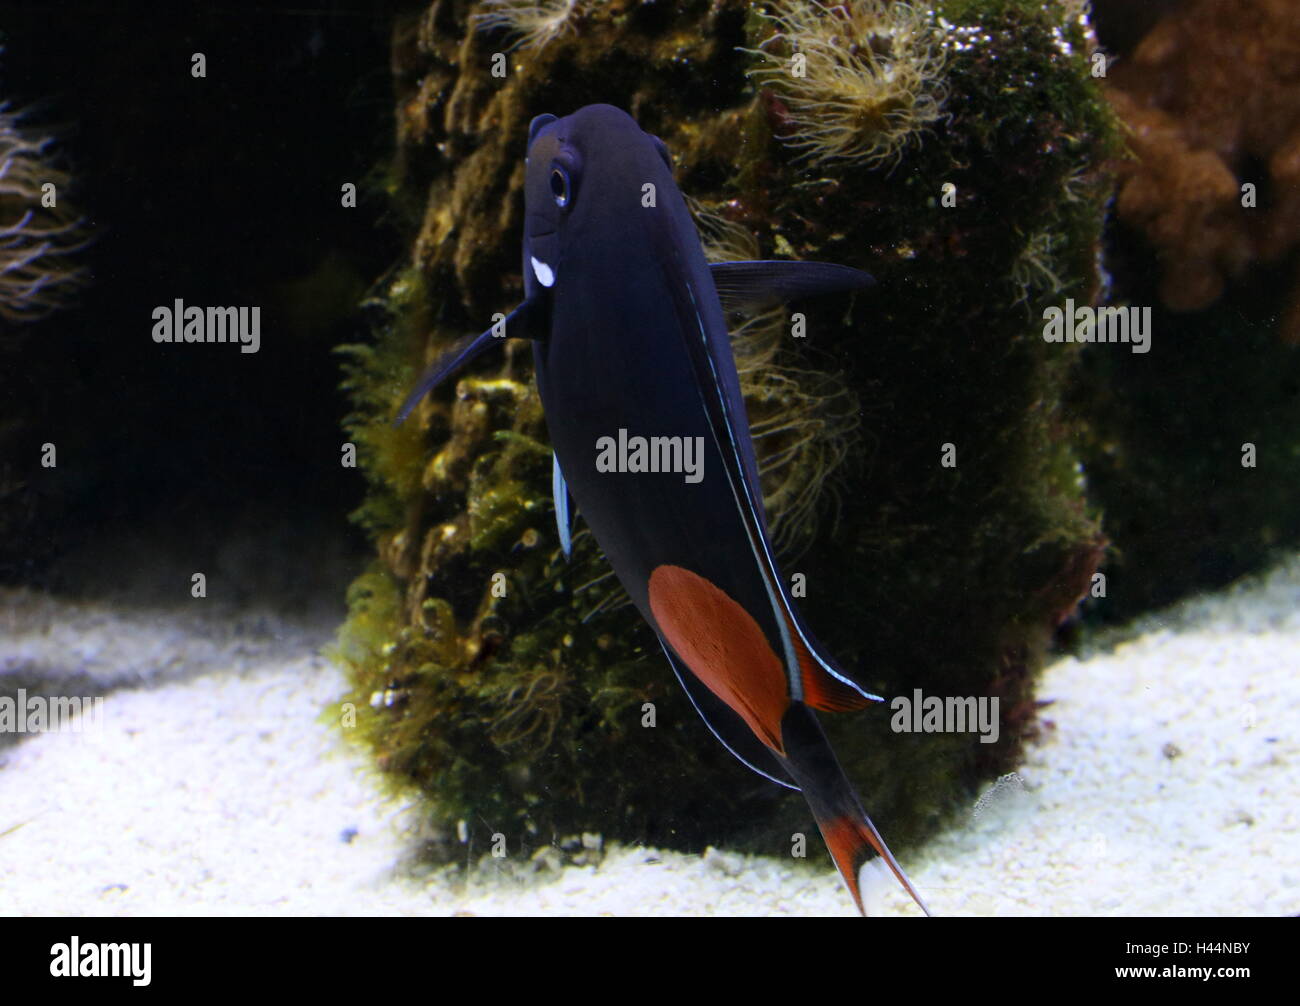 Pacific Achilles tang or  Achilles surgeonfish (Acanthurus achilles) Stock Photo